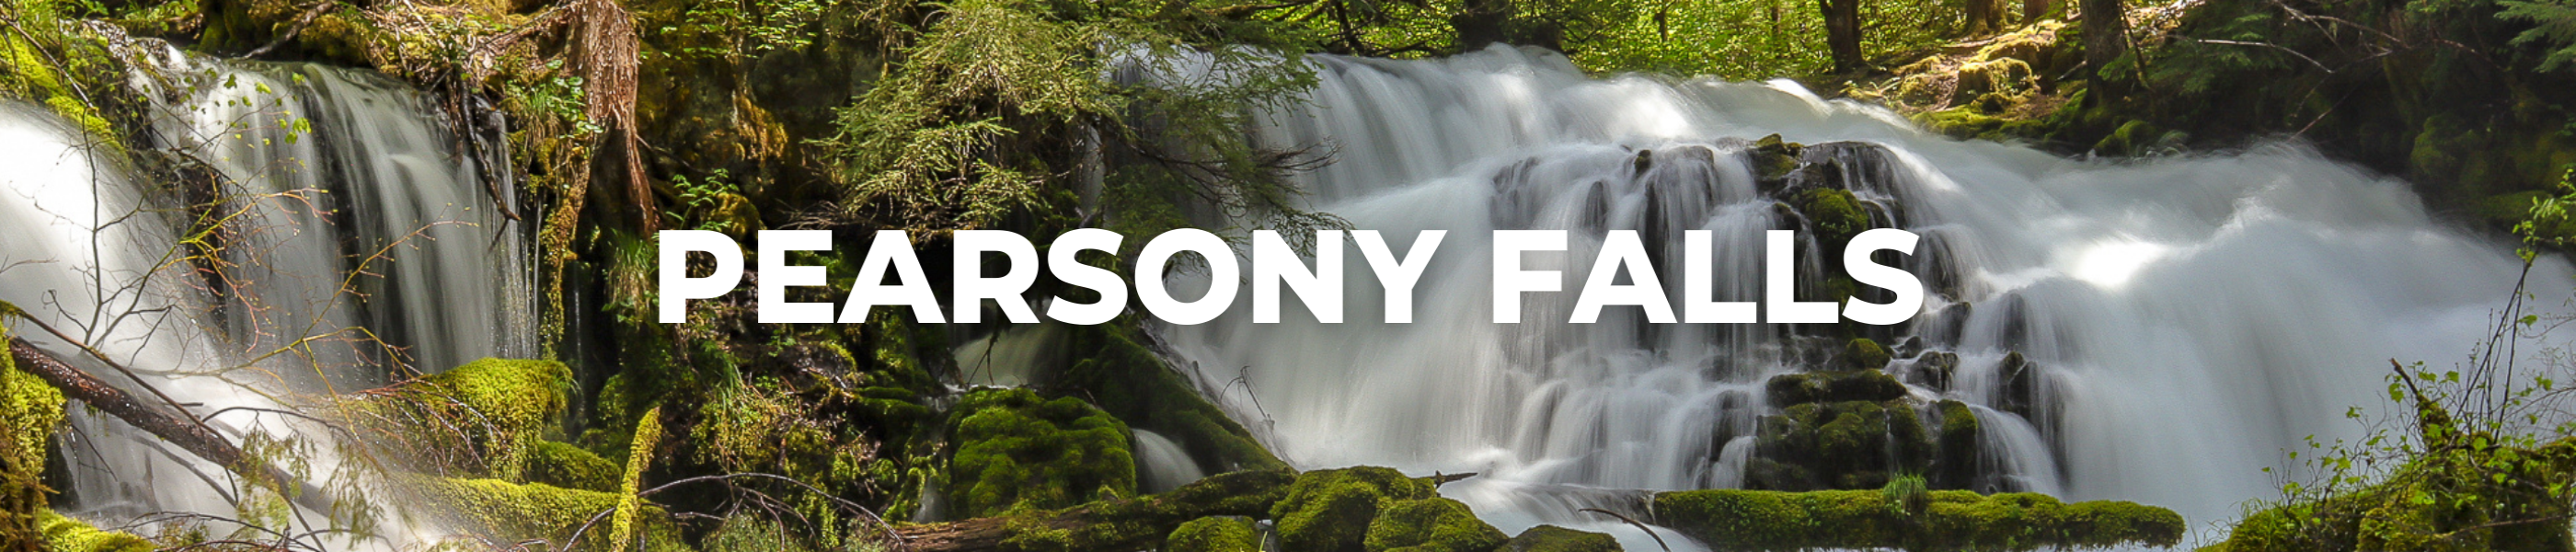 Pearsony Falls, hiking and biking, trails, path, waterfalls, scenery, hike, bike 